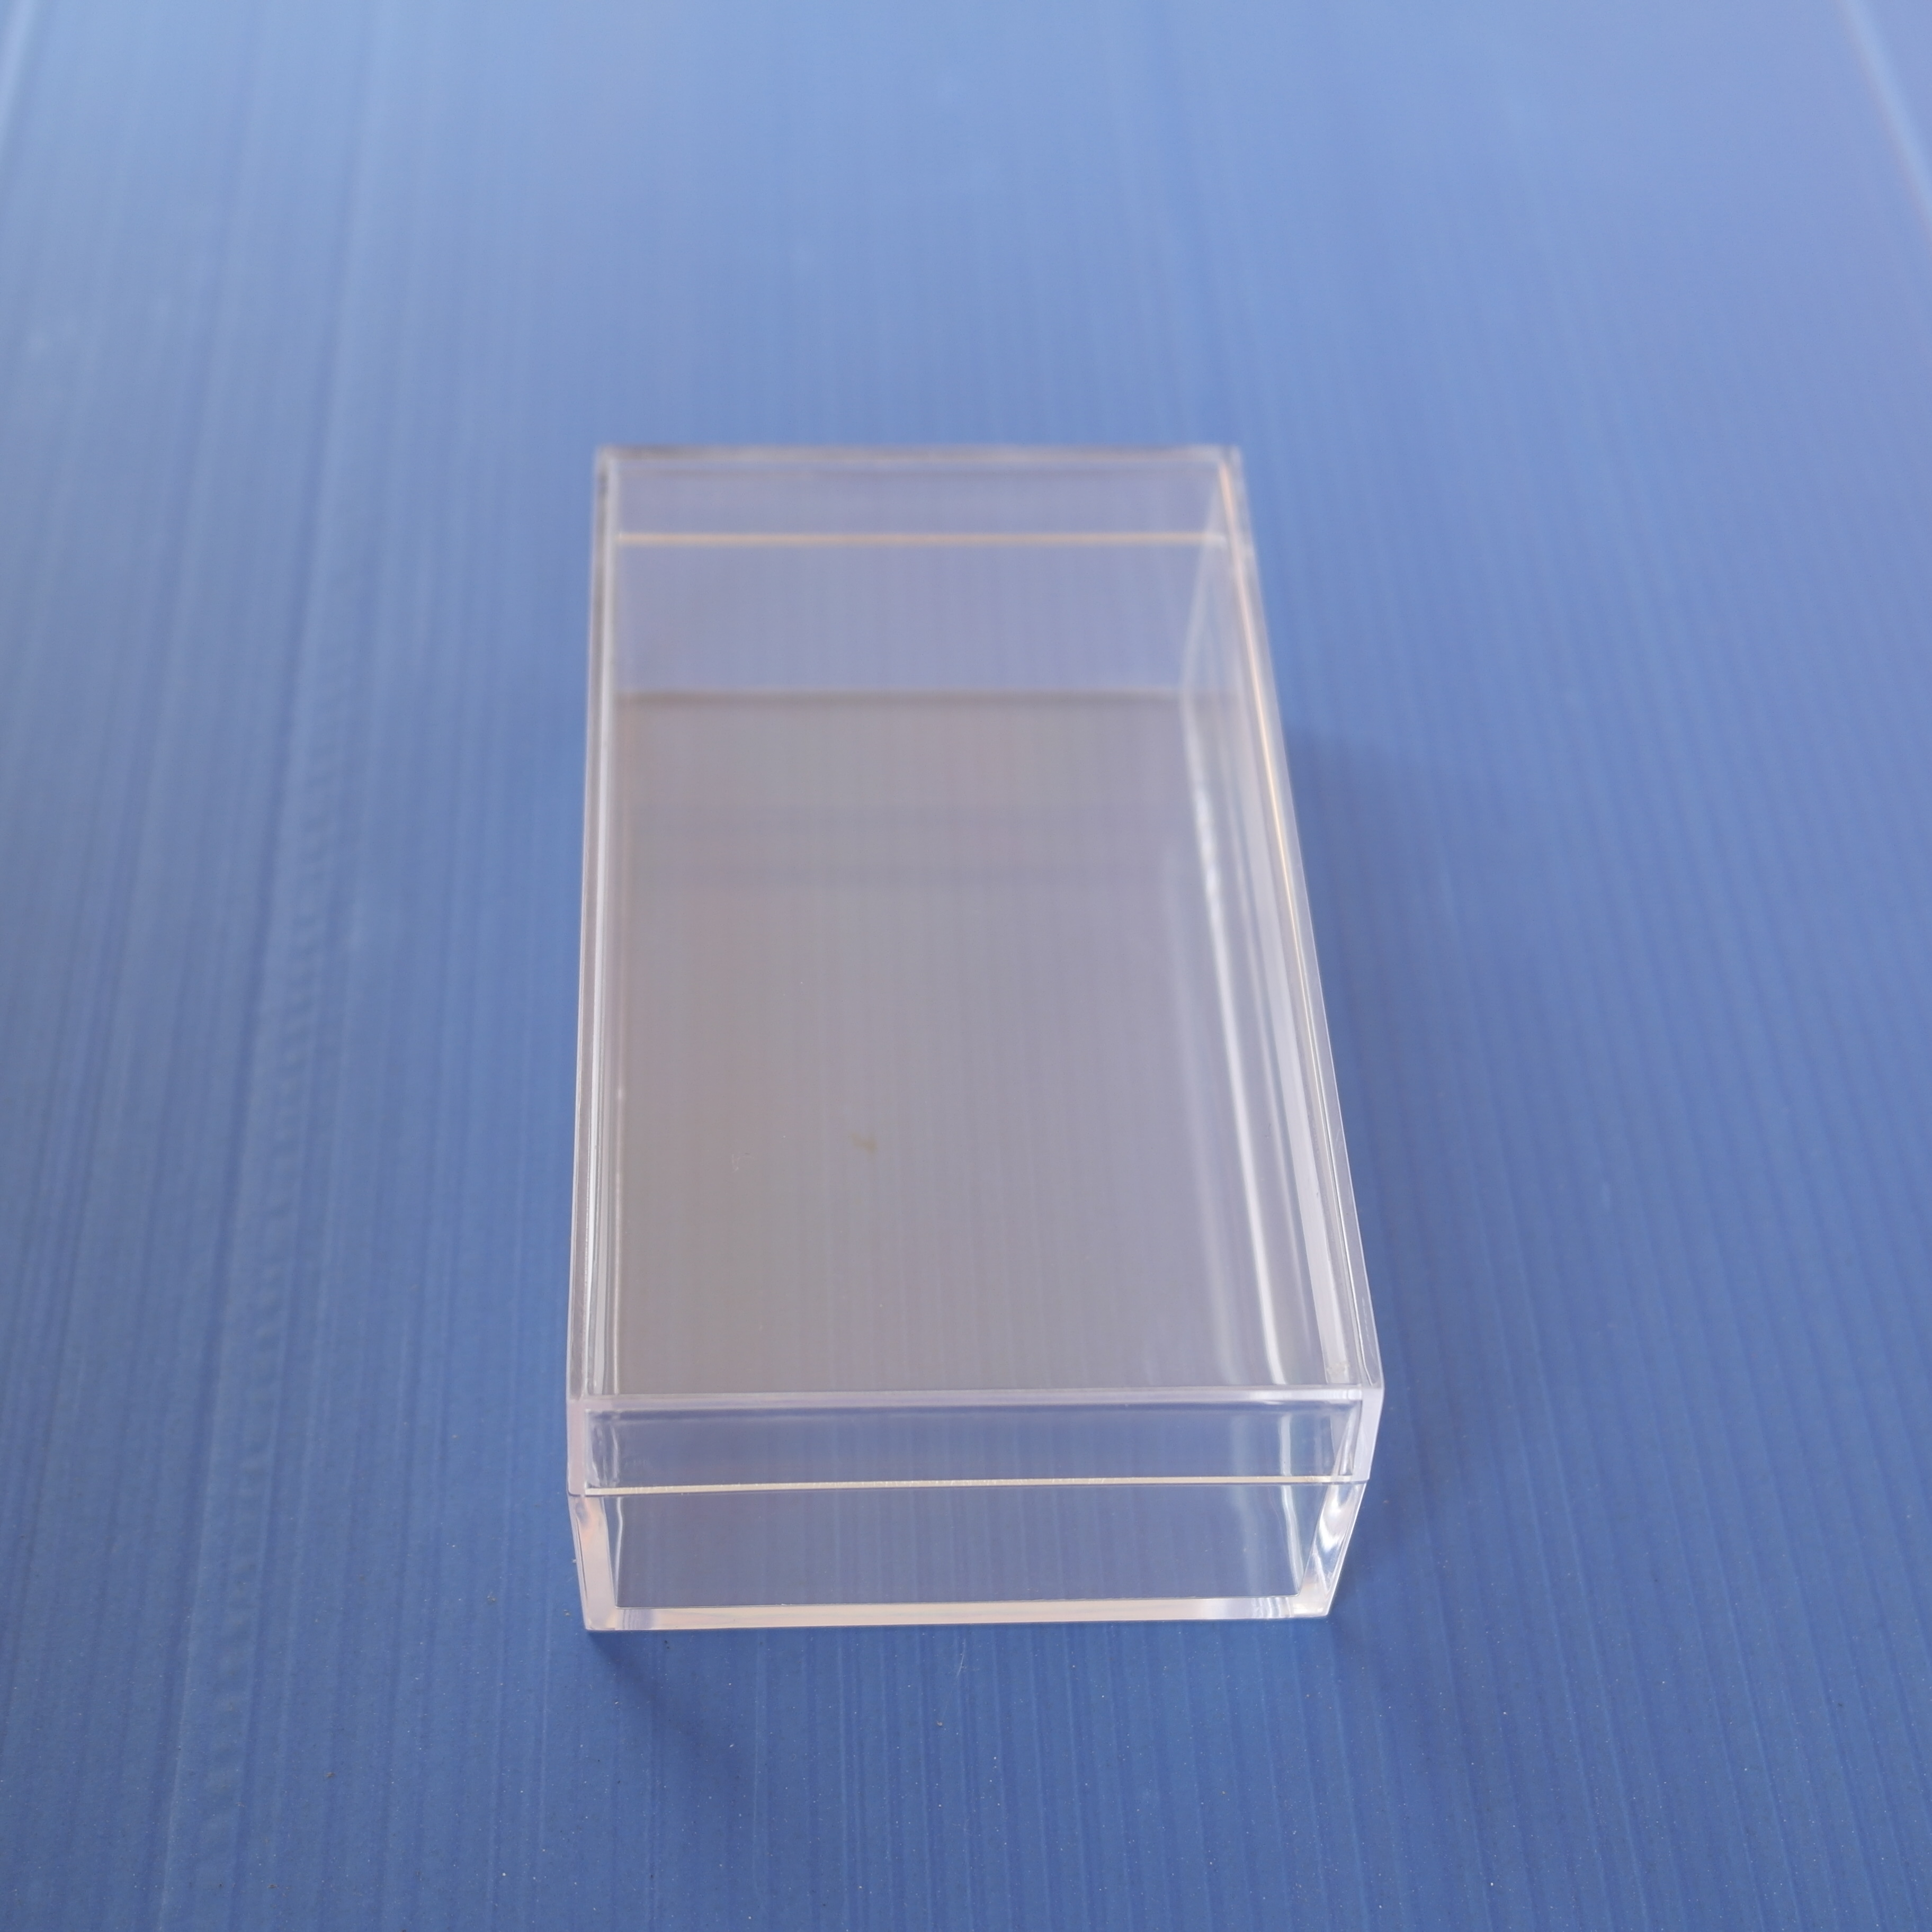 定制型 长方形水晶盒透明塑胶盒 包装收纳小盒子注塑盒厂家直销图片